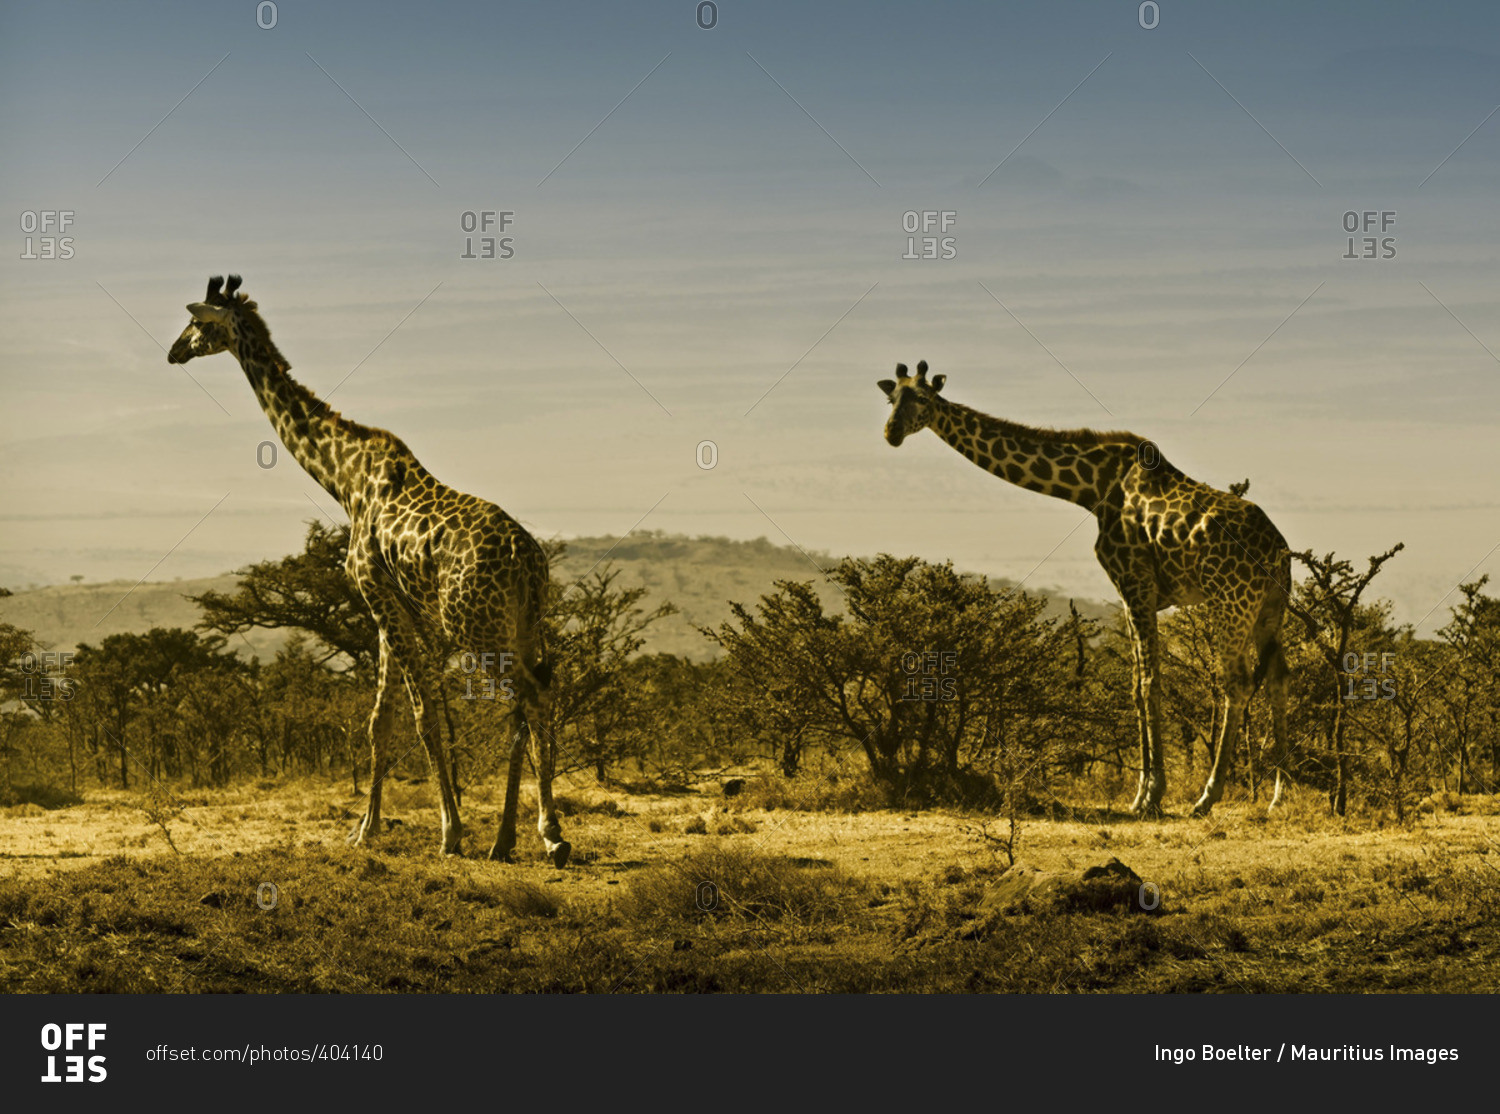 Two giraffes in the Serengeti, Tanzania